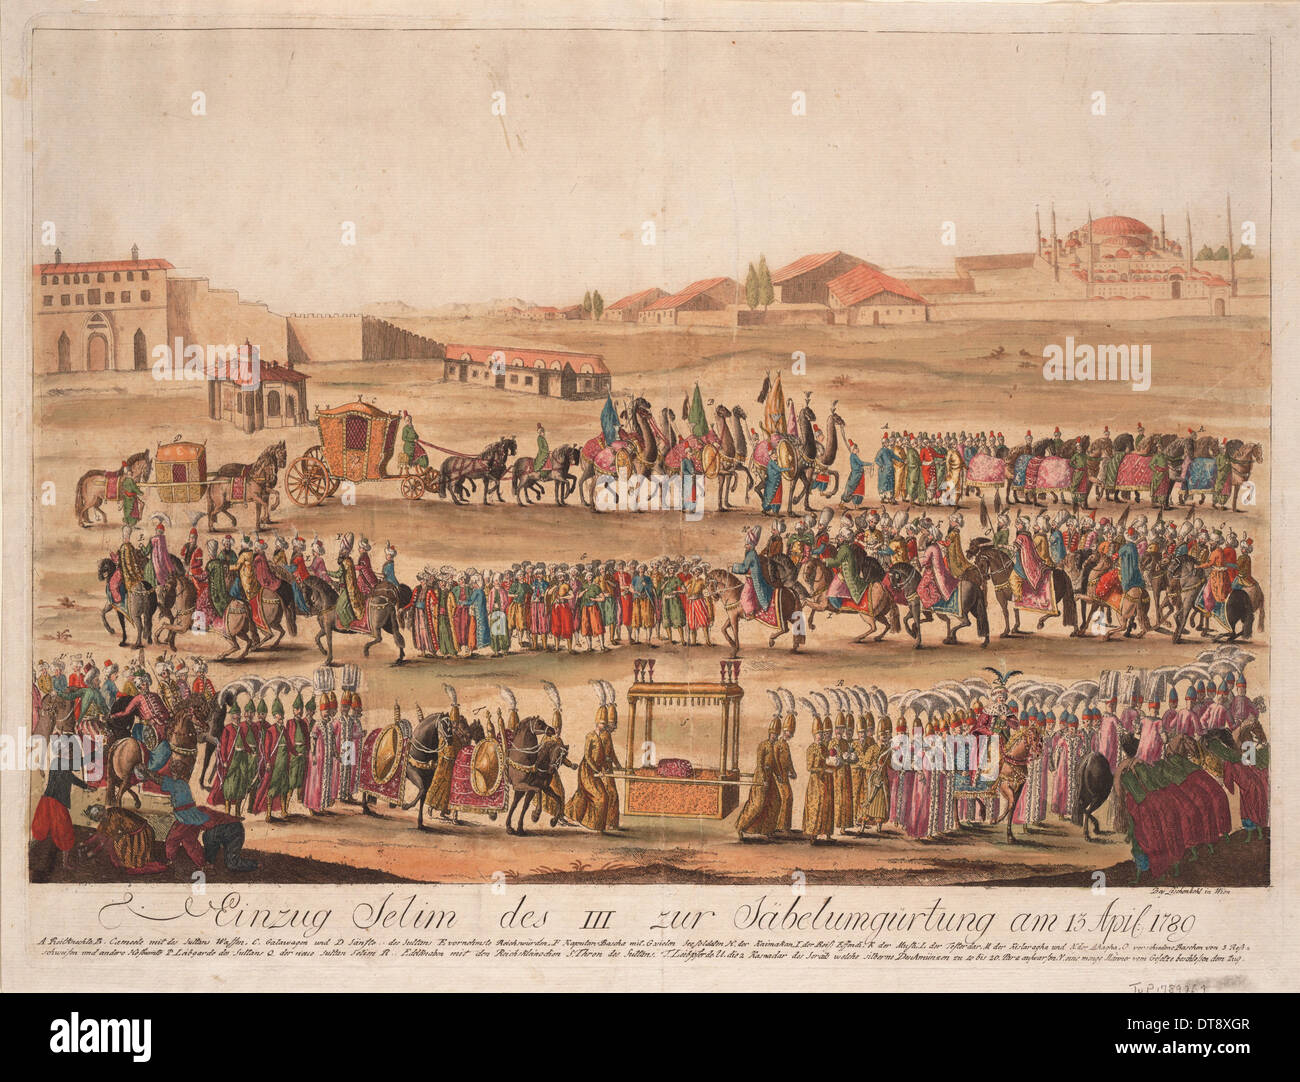 L'entrée du Sultan Selim III à l'engagement le sabre le 13 avril 1789, 1789. Artiste : Loeschenkohl, Johann Hieronymus (1753-1807) Banque D'Images